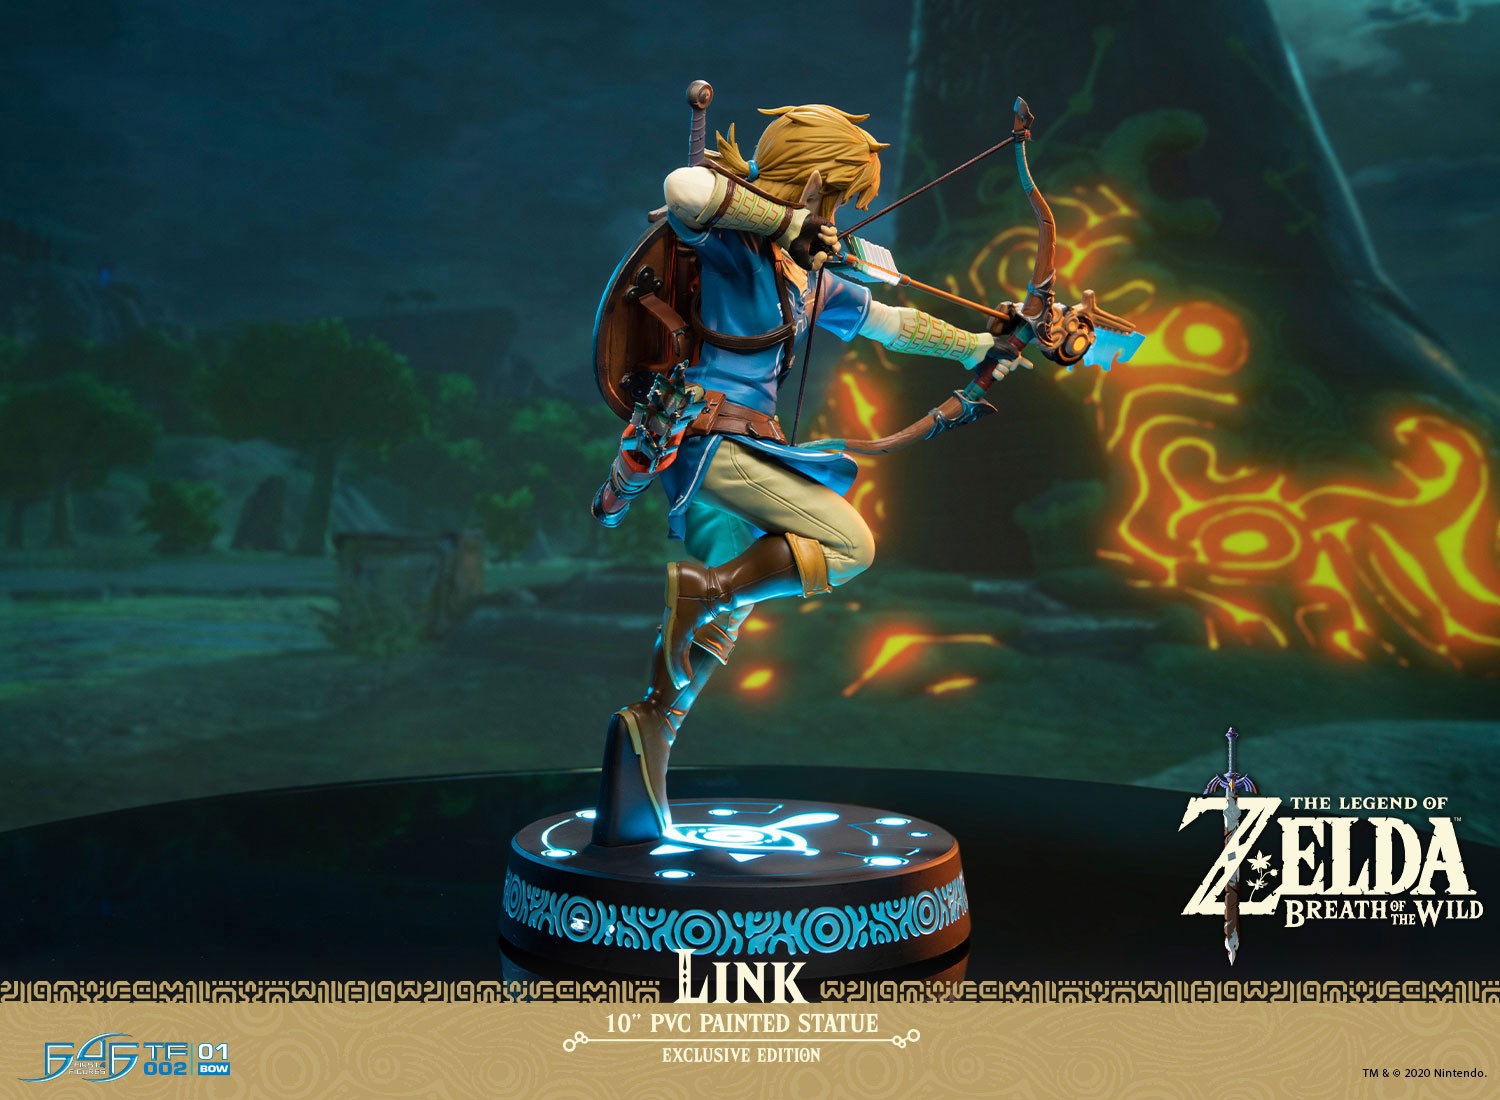 Link - The Legend Of Zelda - Half-Orc Custom & Collectibles